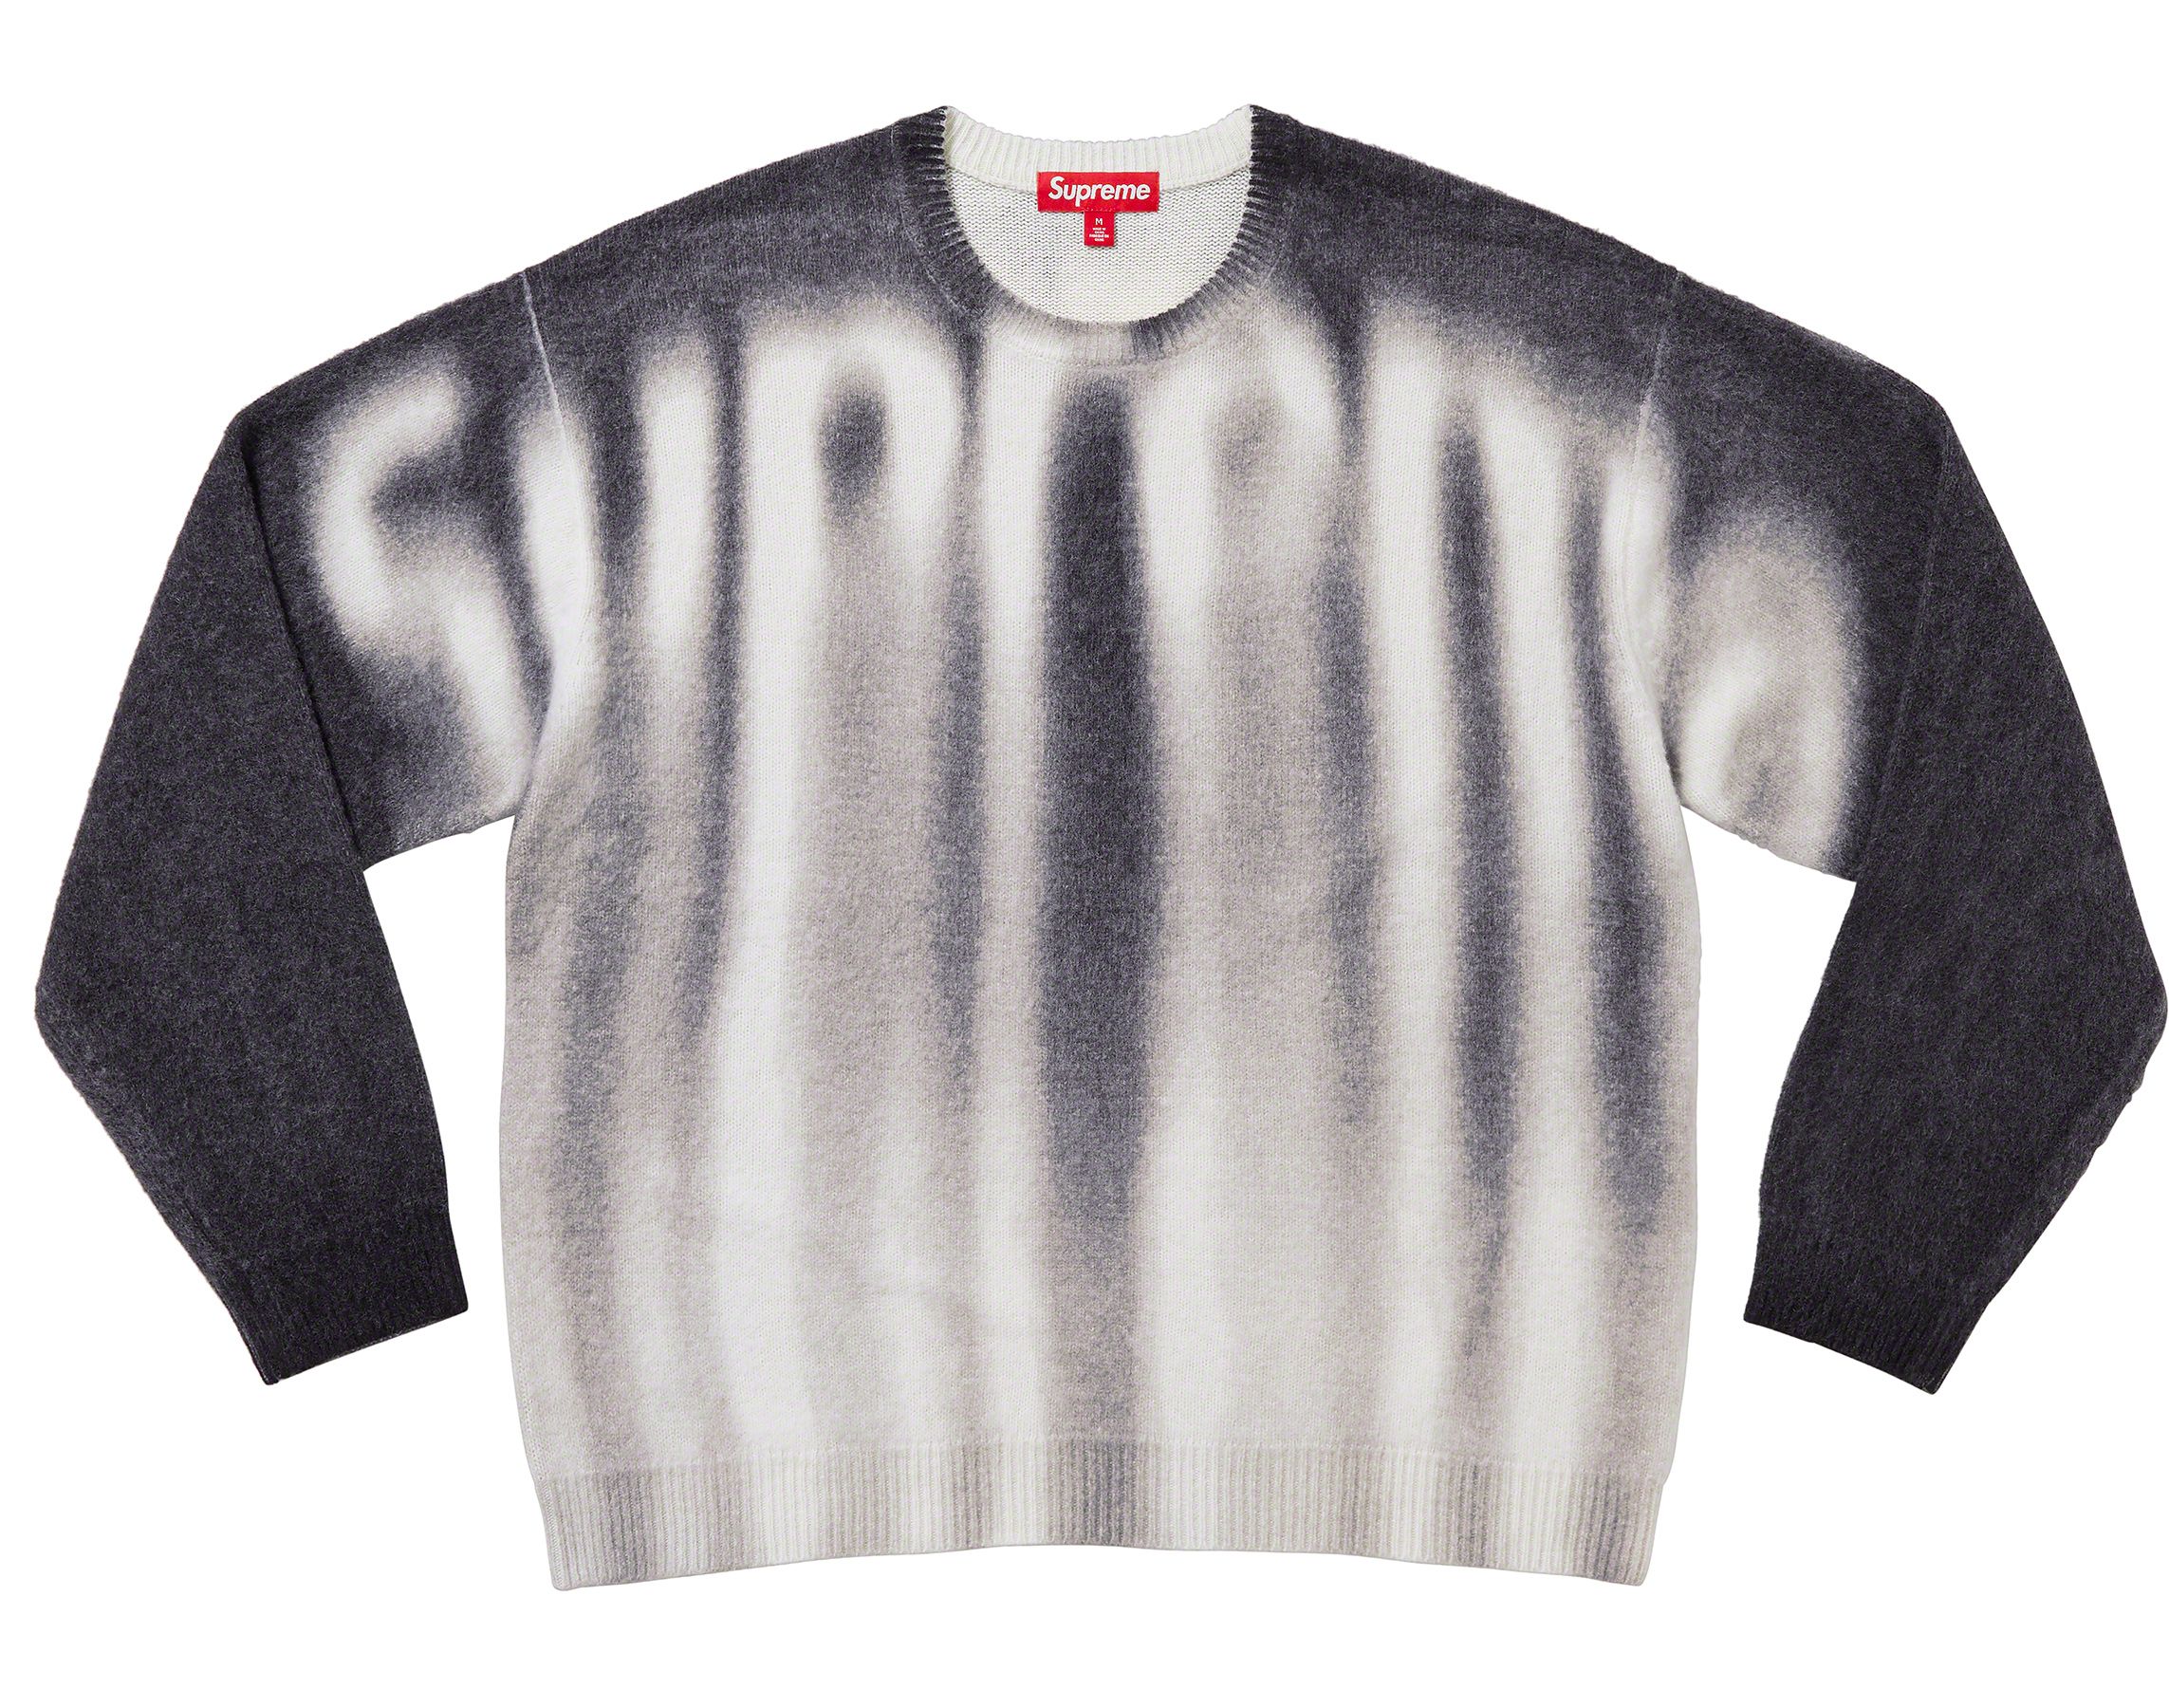 Supreme 23ss blured logo sweaterよろしくお願い致します